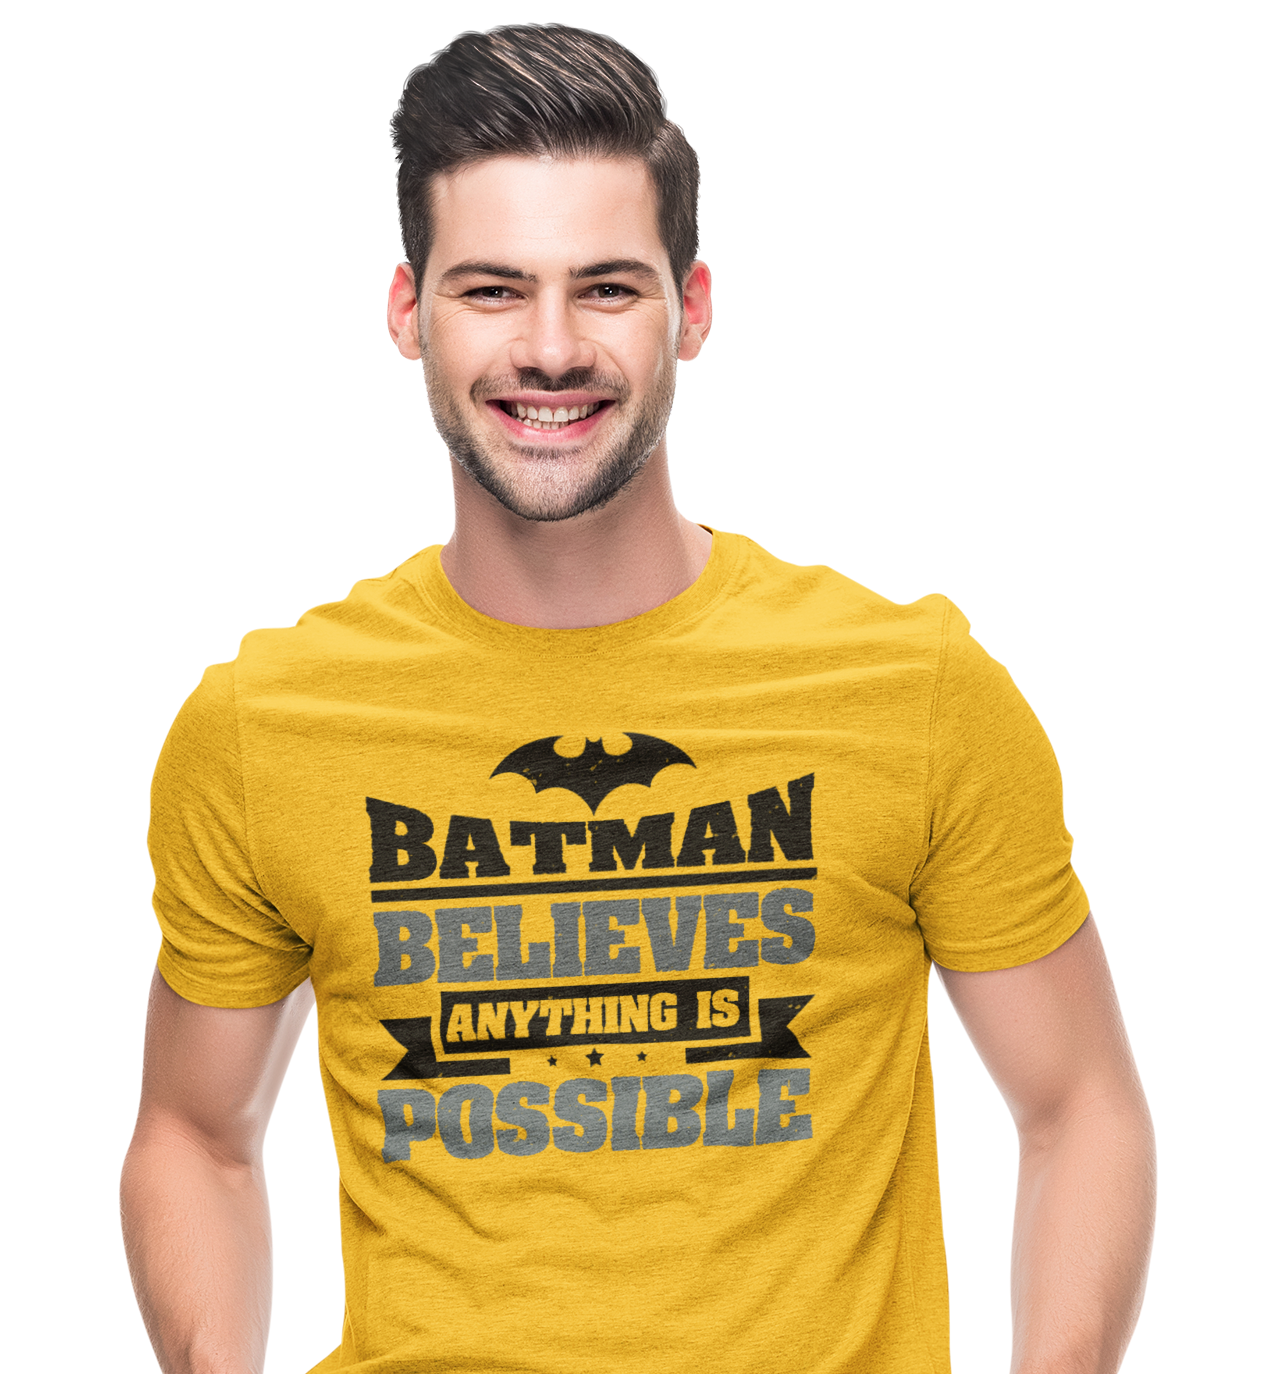 TNH - Men's Round Neck Tshirt - Batman - Believes